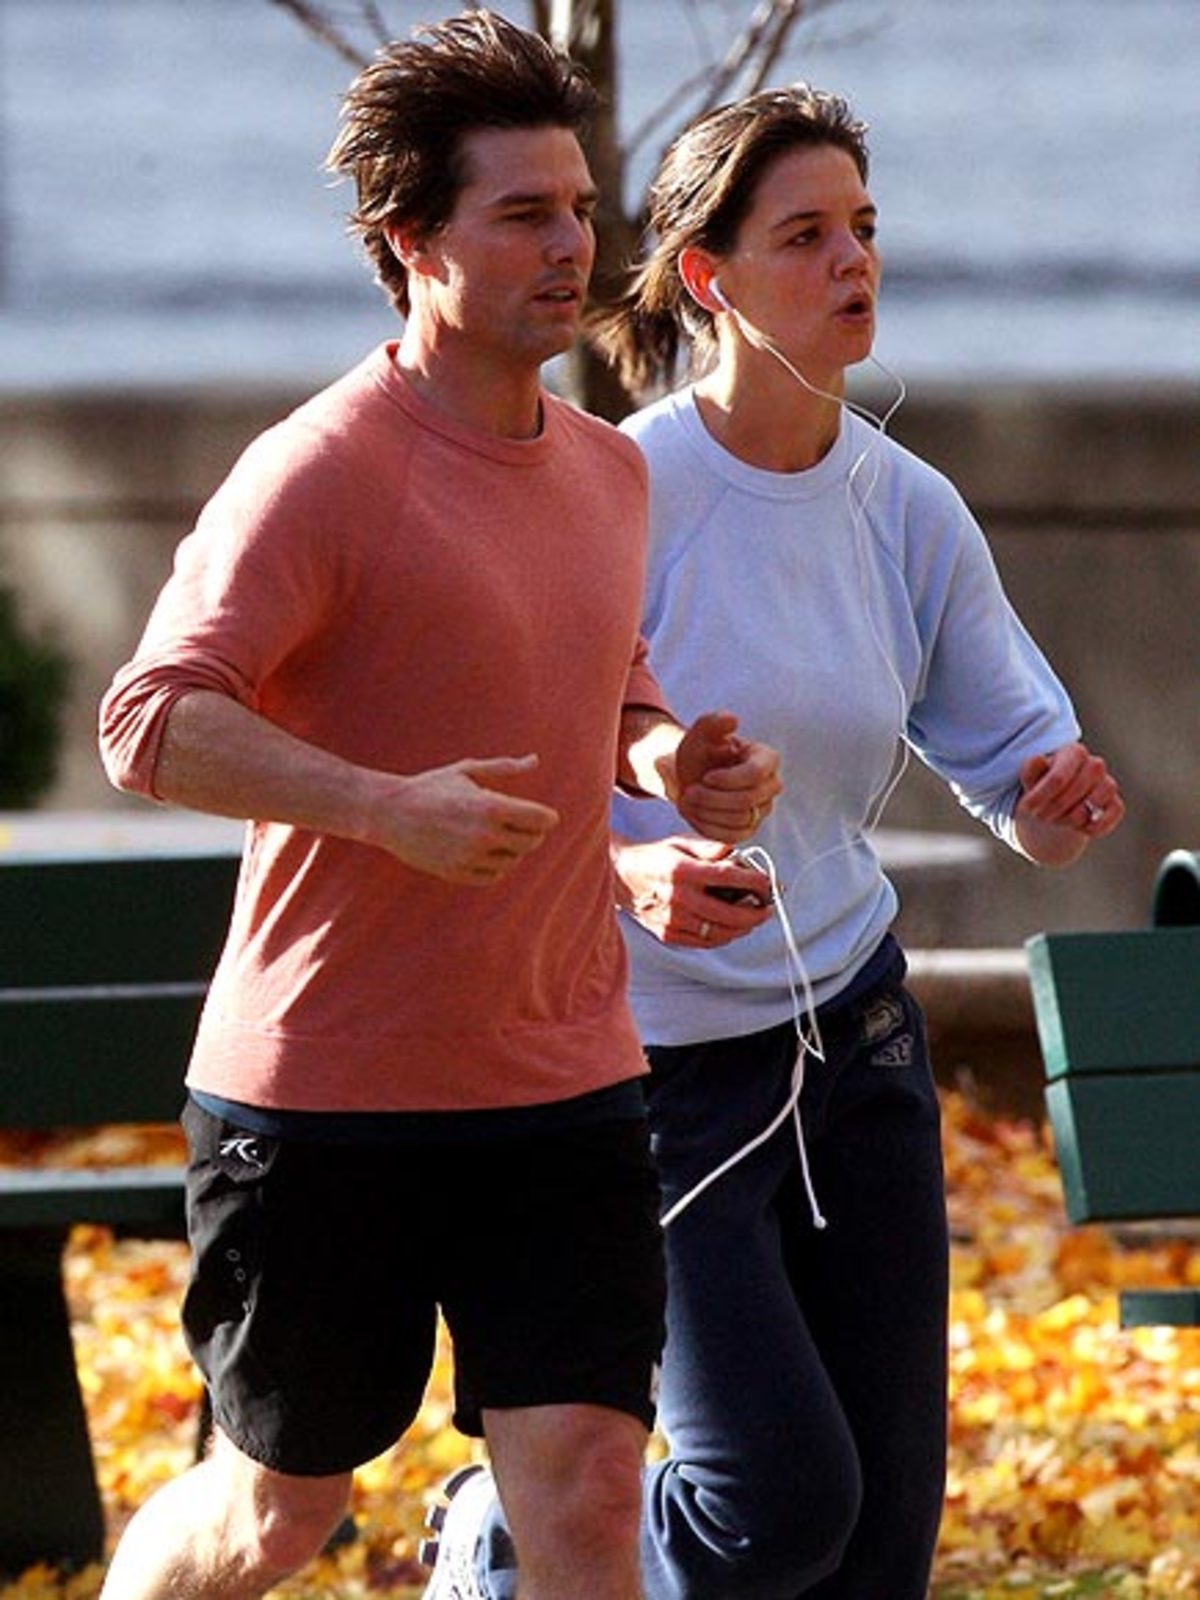 Ο Τομ Κρουζ με τη γυναίκα του  στο ...τρέξιμο